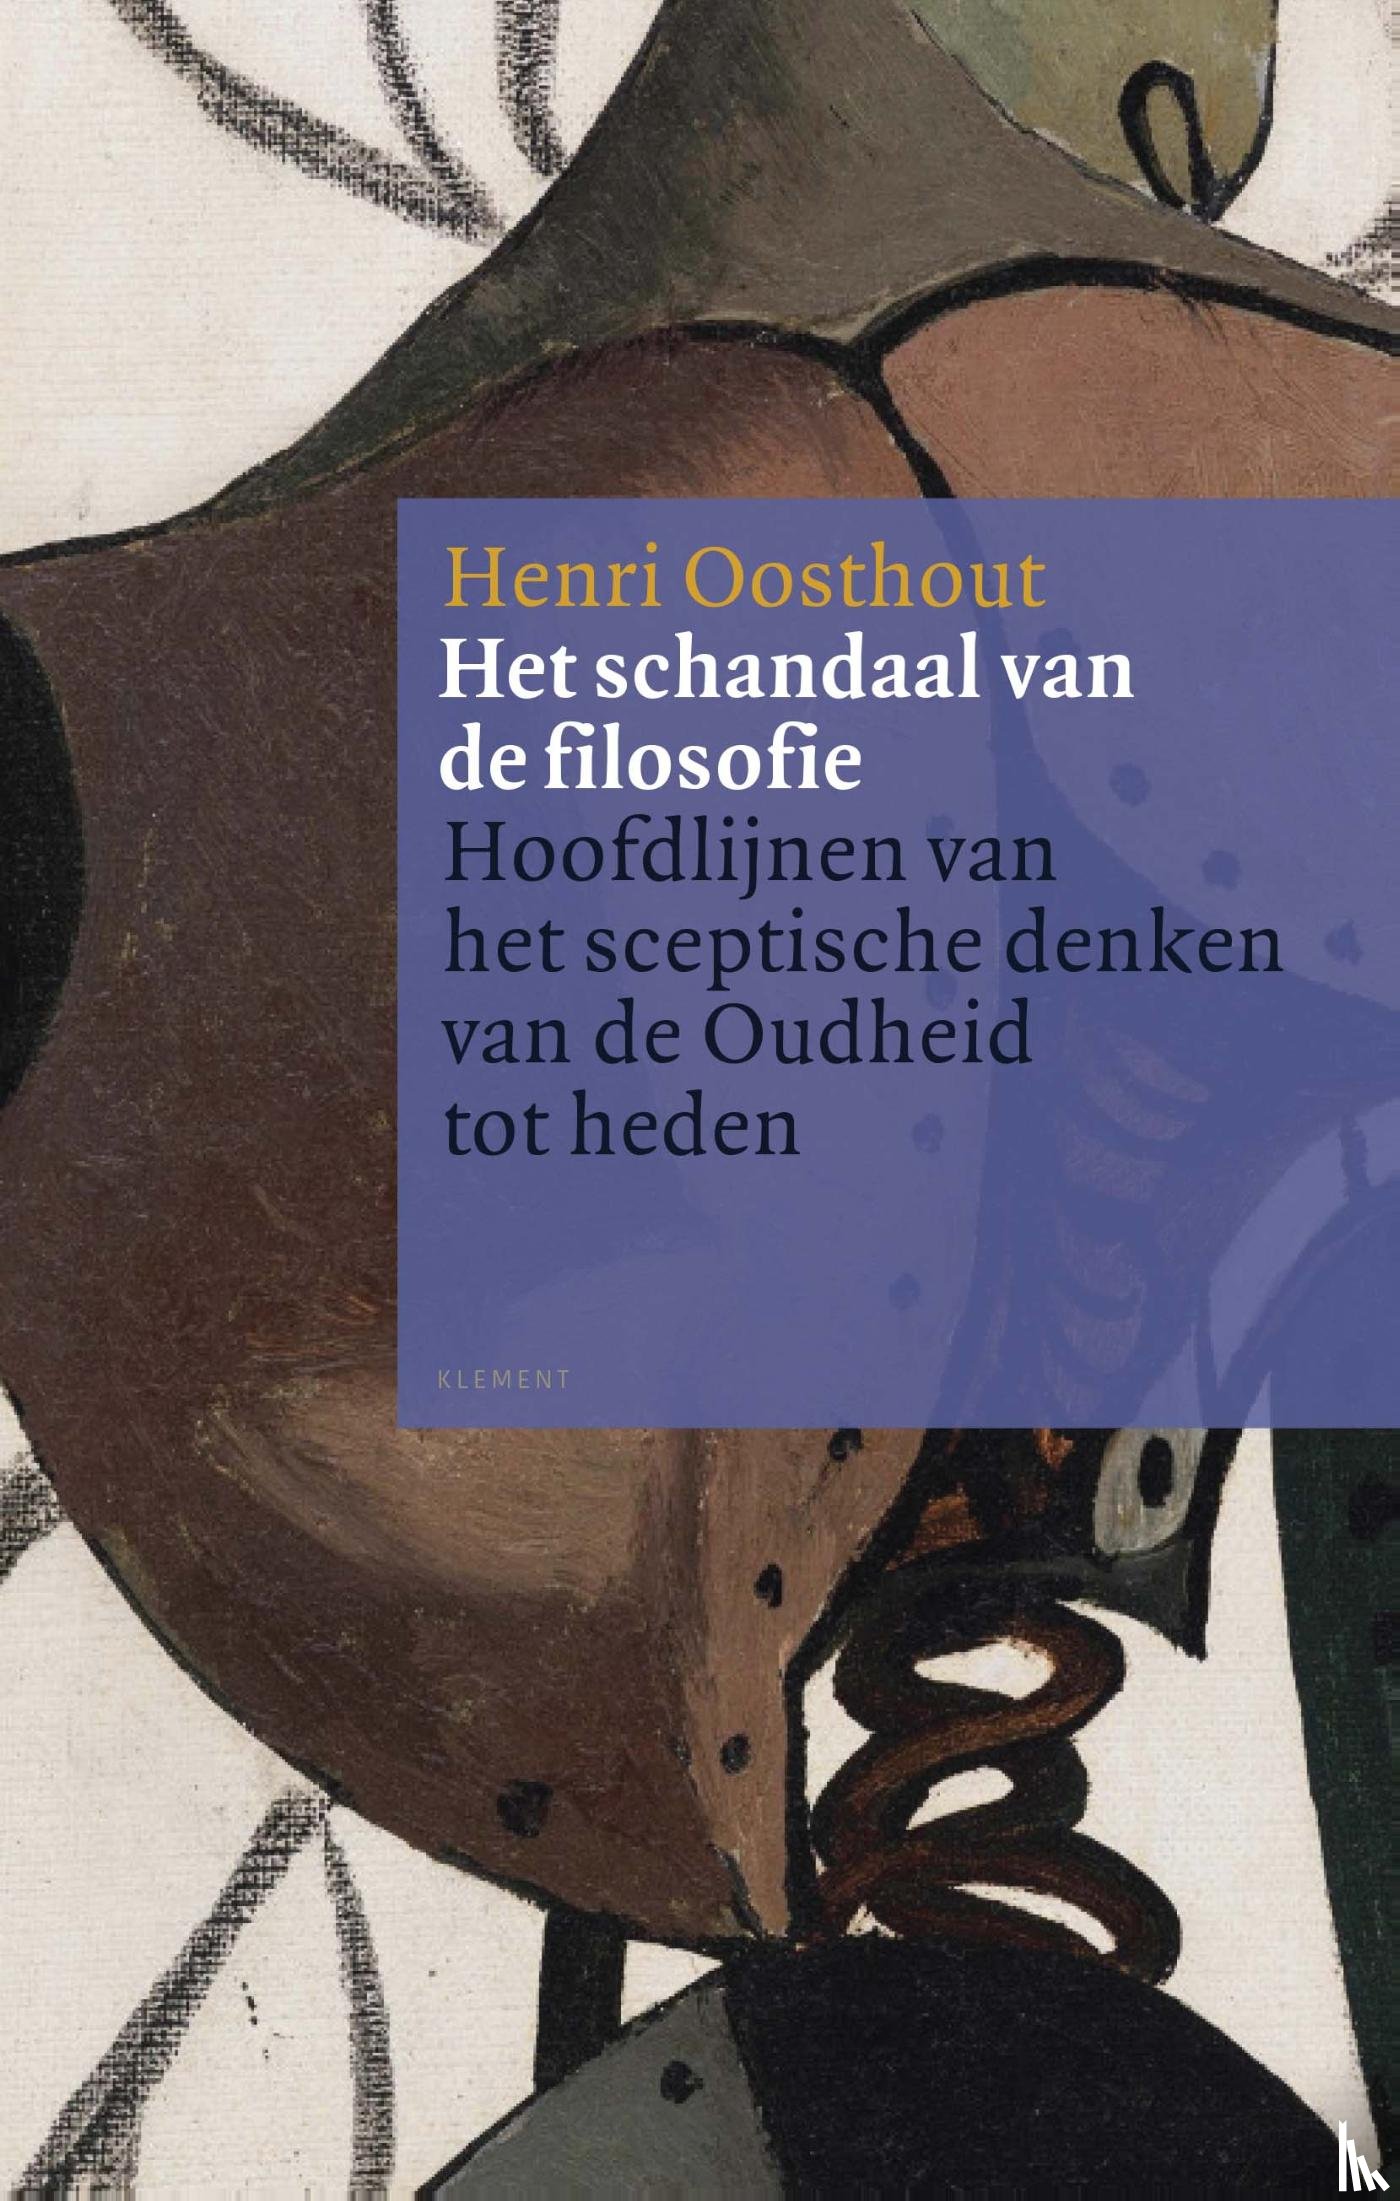 Oosthout, Henri - Het schandaal van de filosofie